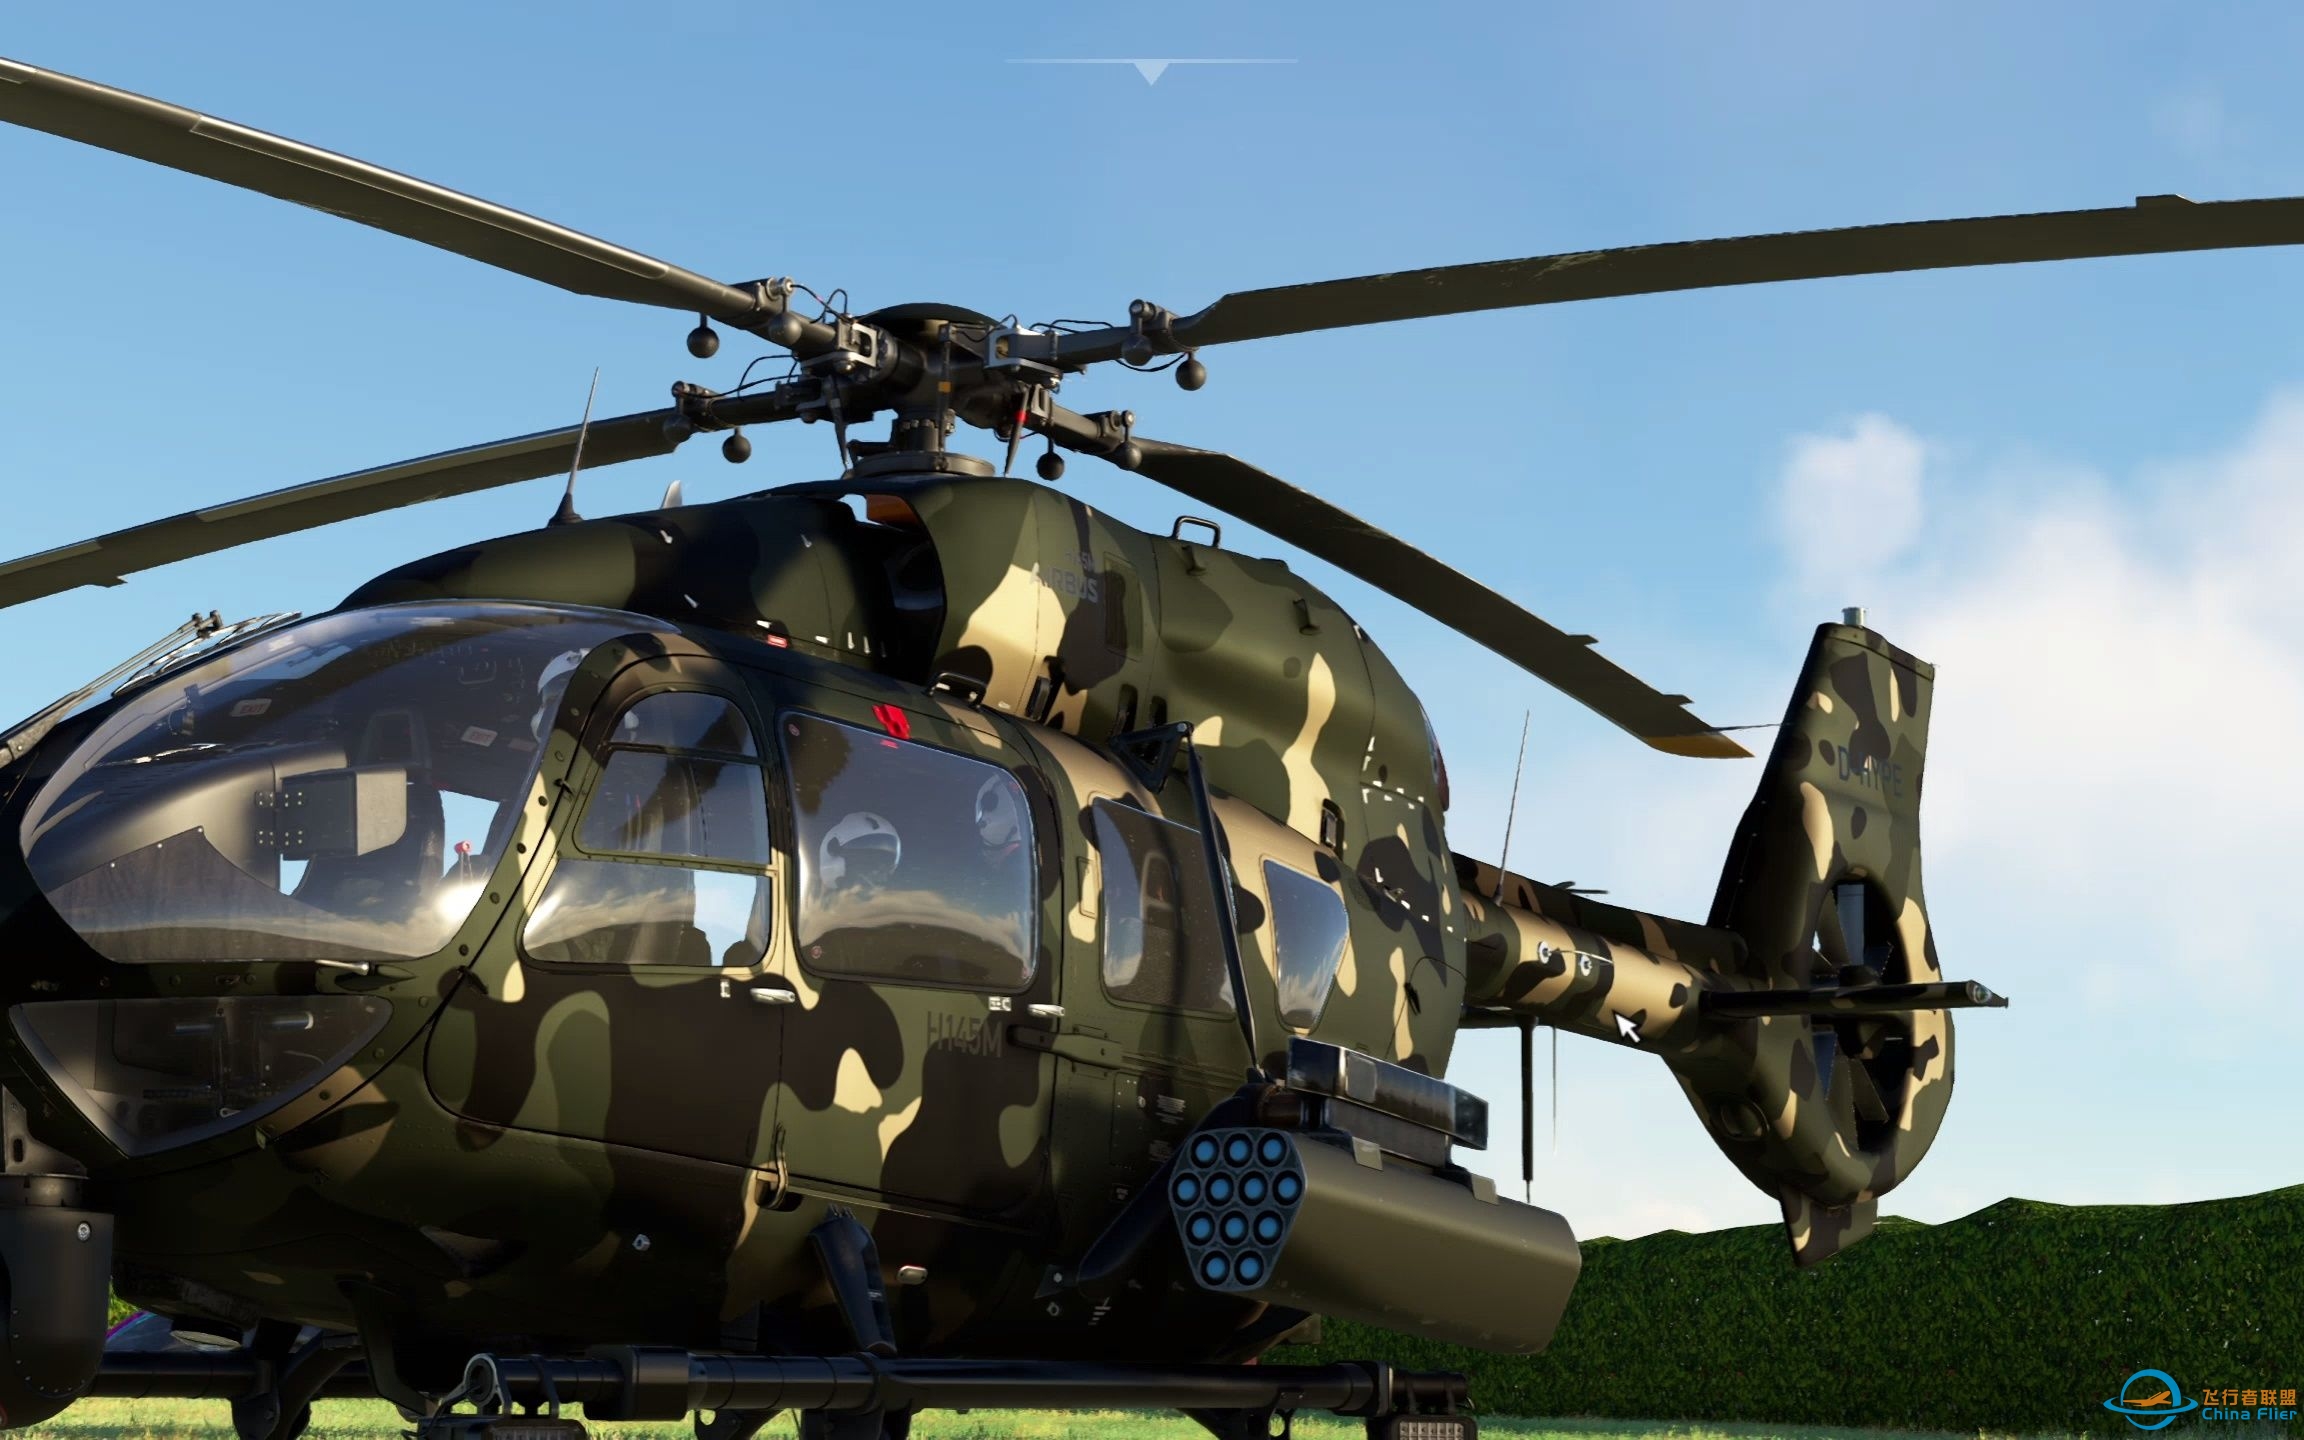 【微软飞行模拟2020】在游戏里唯一一款可以发射武器的飞机！空客H145军用直升机-2319 